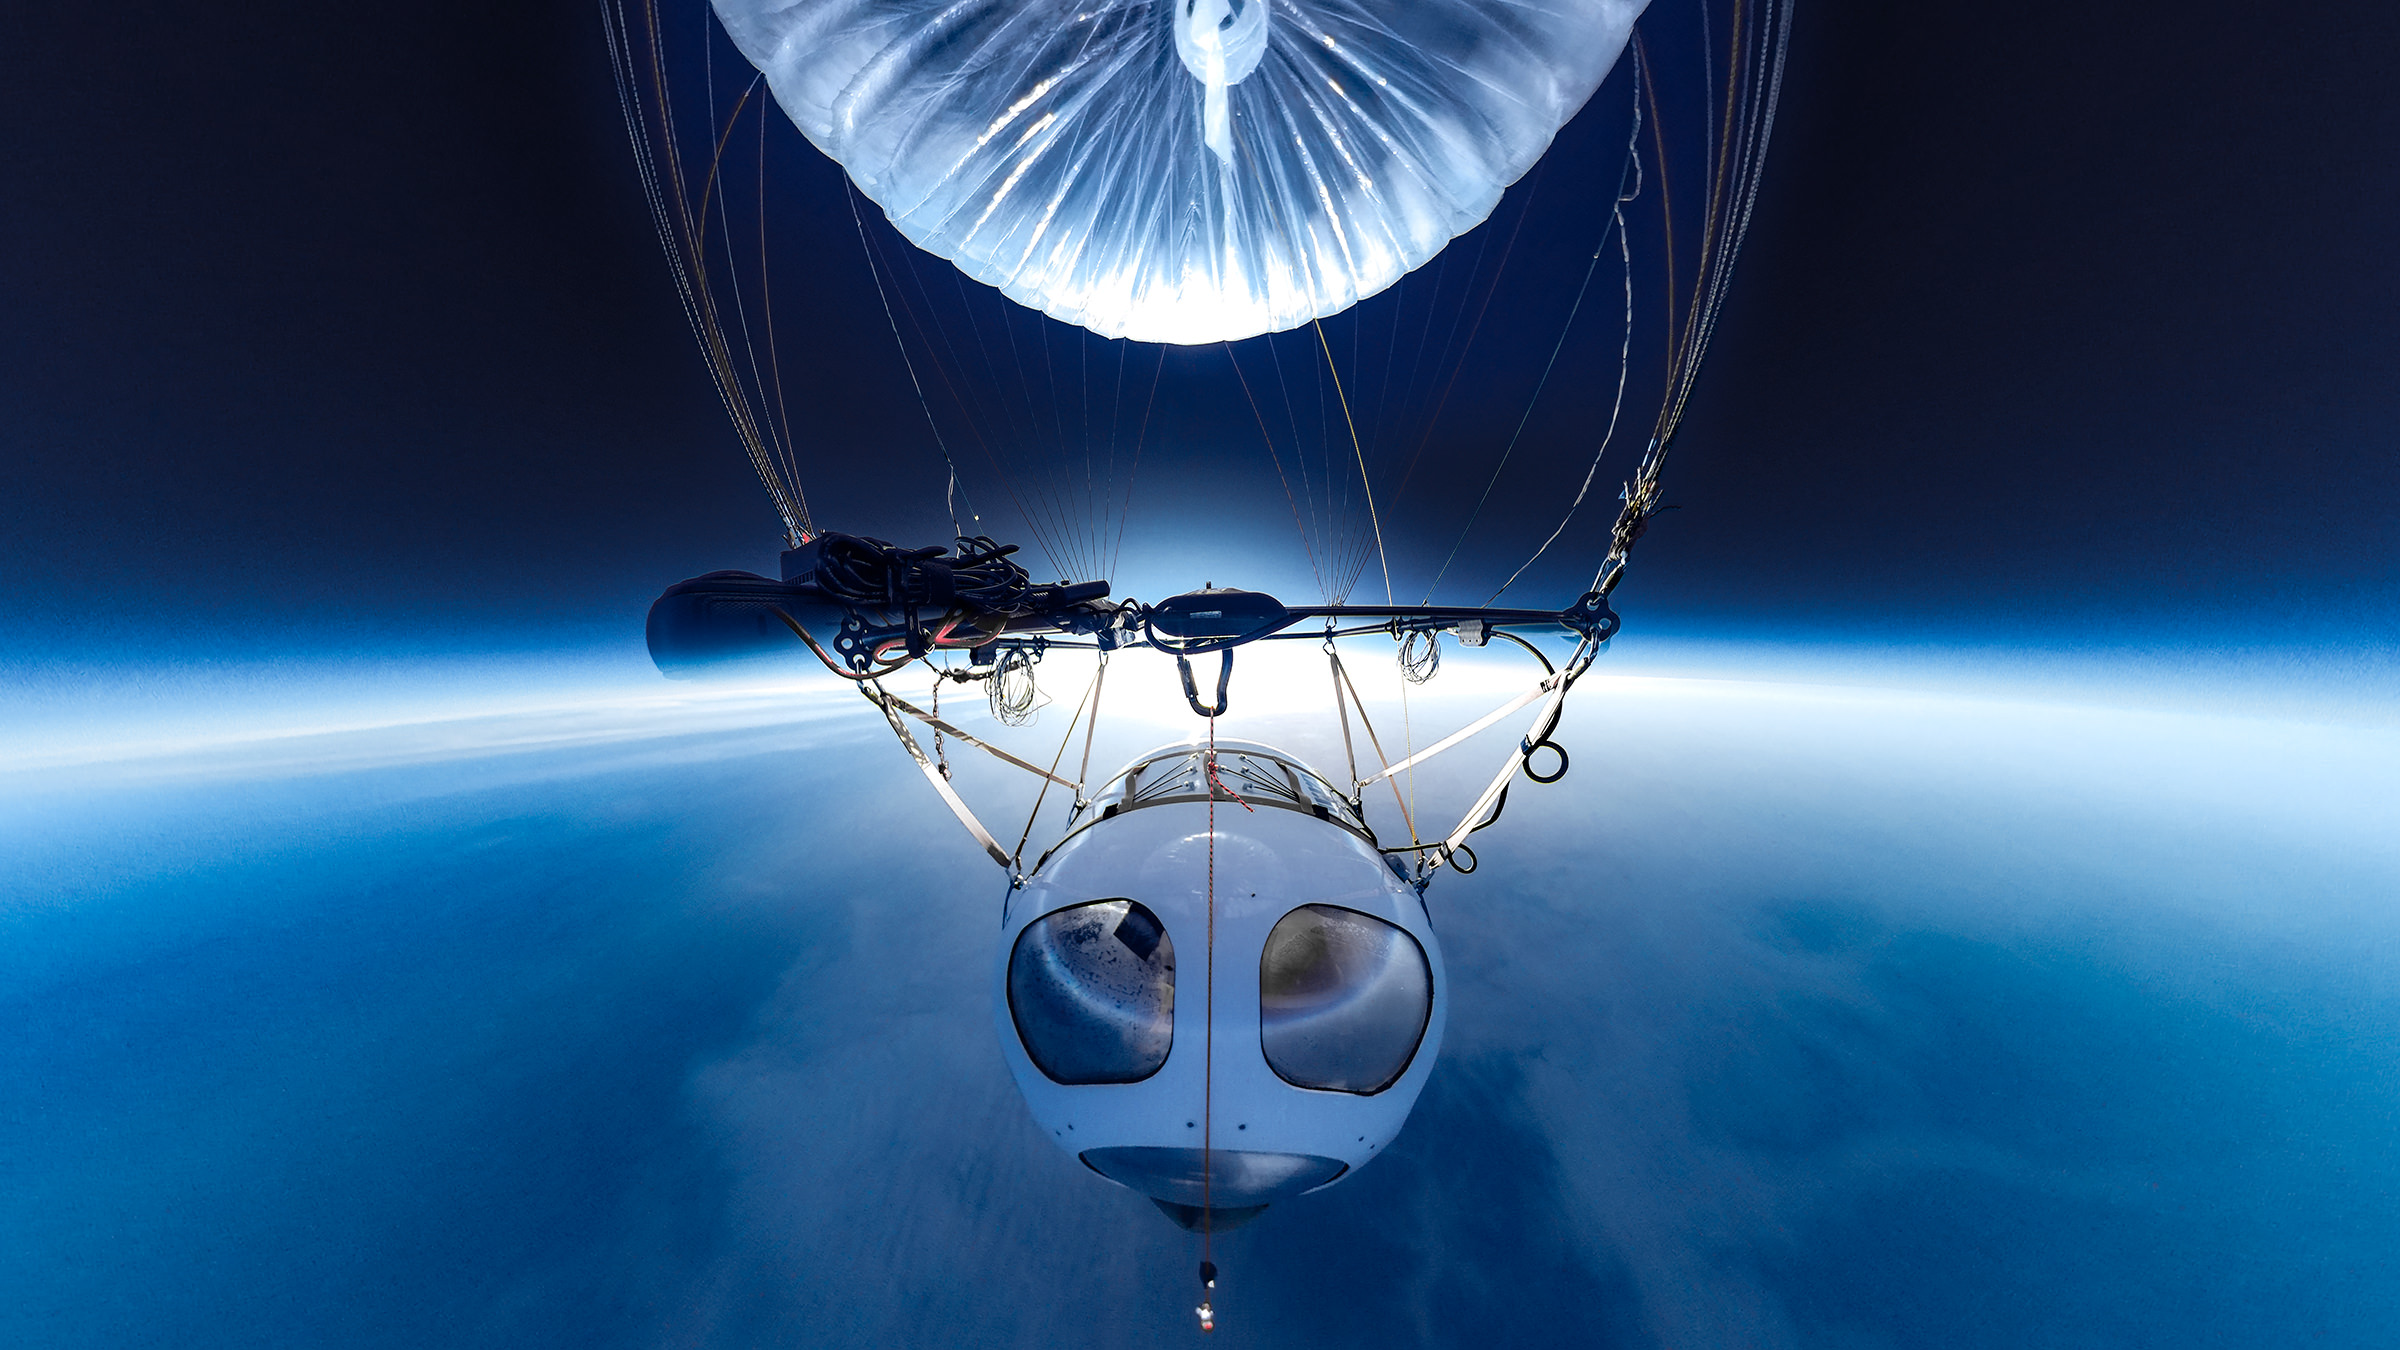 気球による宇宙遊覧を目指す岩谷技研、飛行試験で商業飛行の高度と同じ2万m超に到達